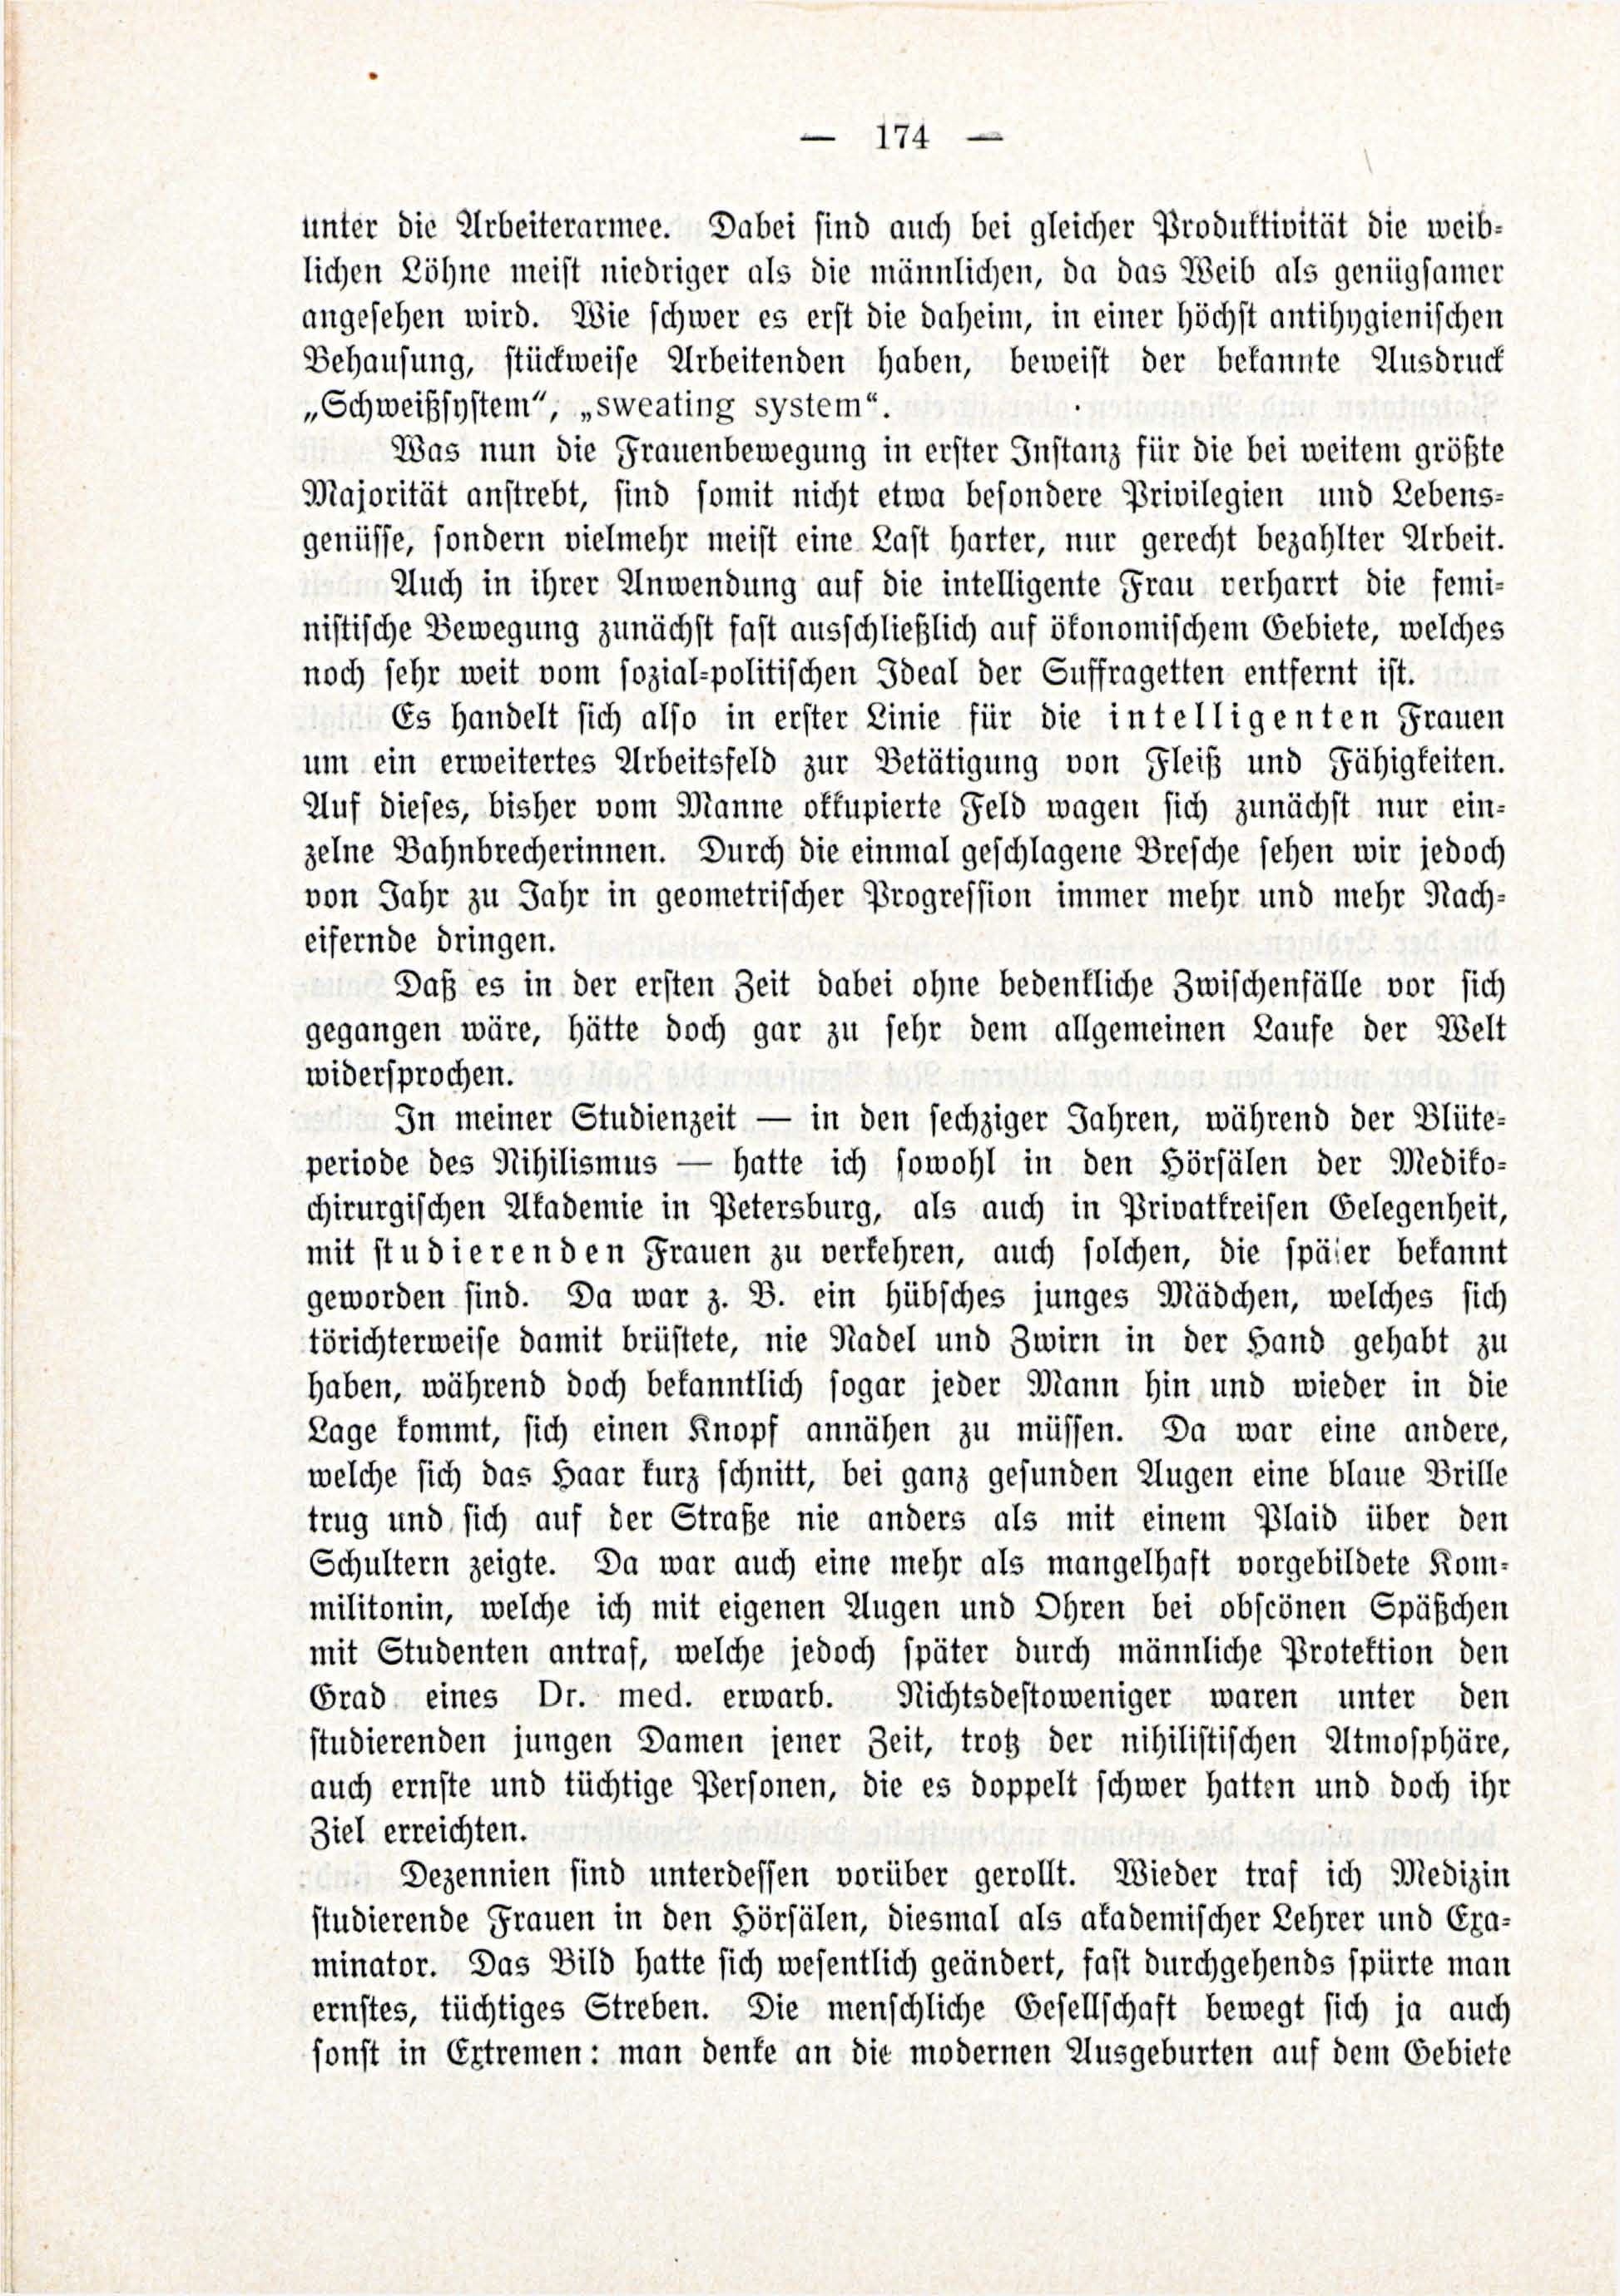 Deutsche Monatsschrift für Russland [3/03] (1914) | 20. (174) Main body of text